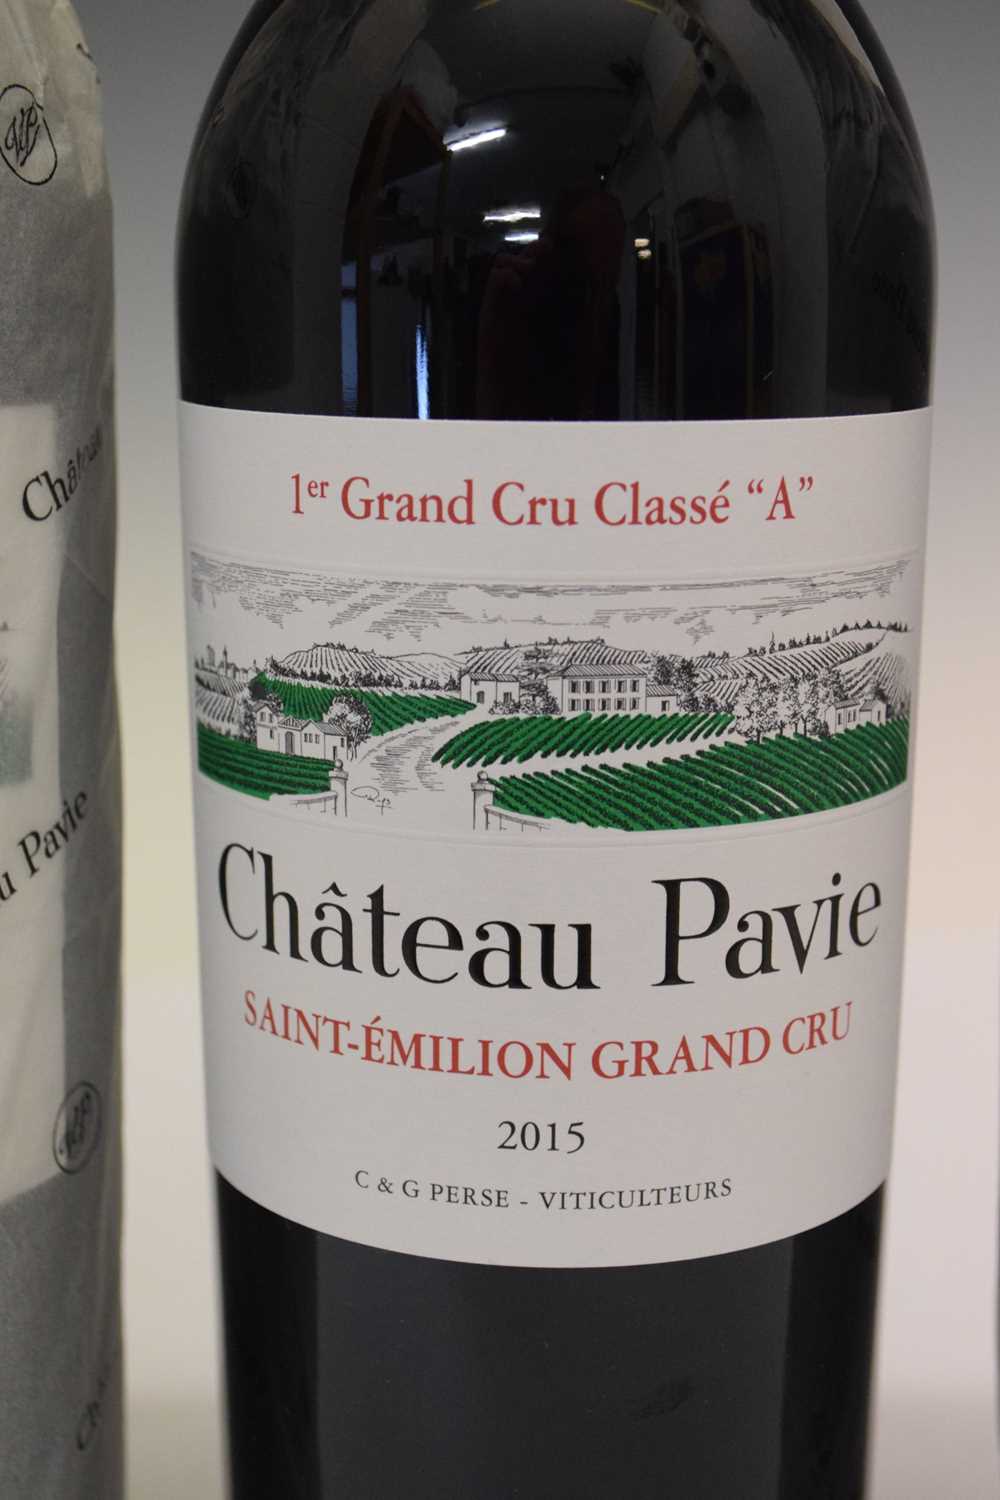 Château Pavie 1er Grand Cru Classé "A", 2015, St-Emilion, Bordeaux - Image 3 of 8